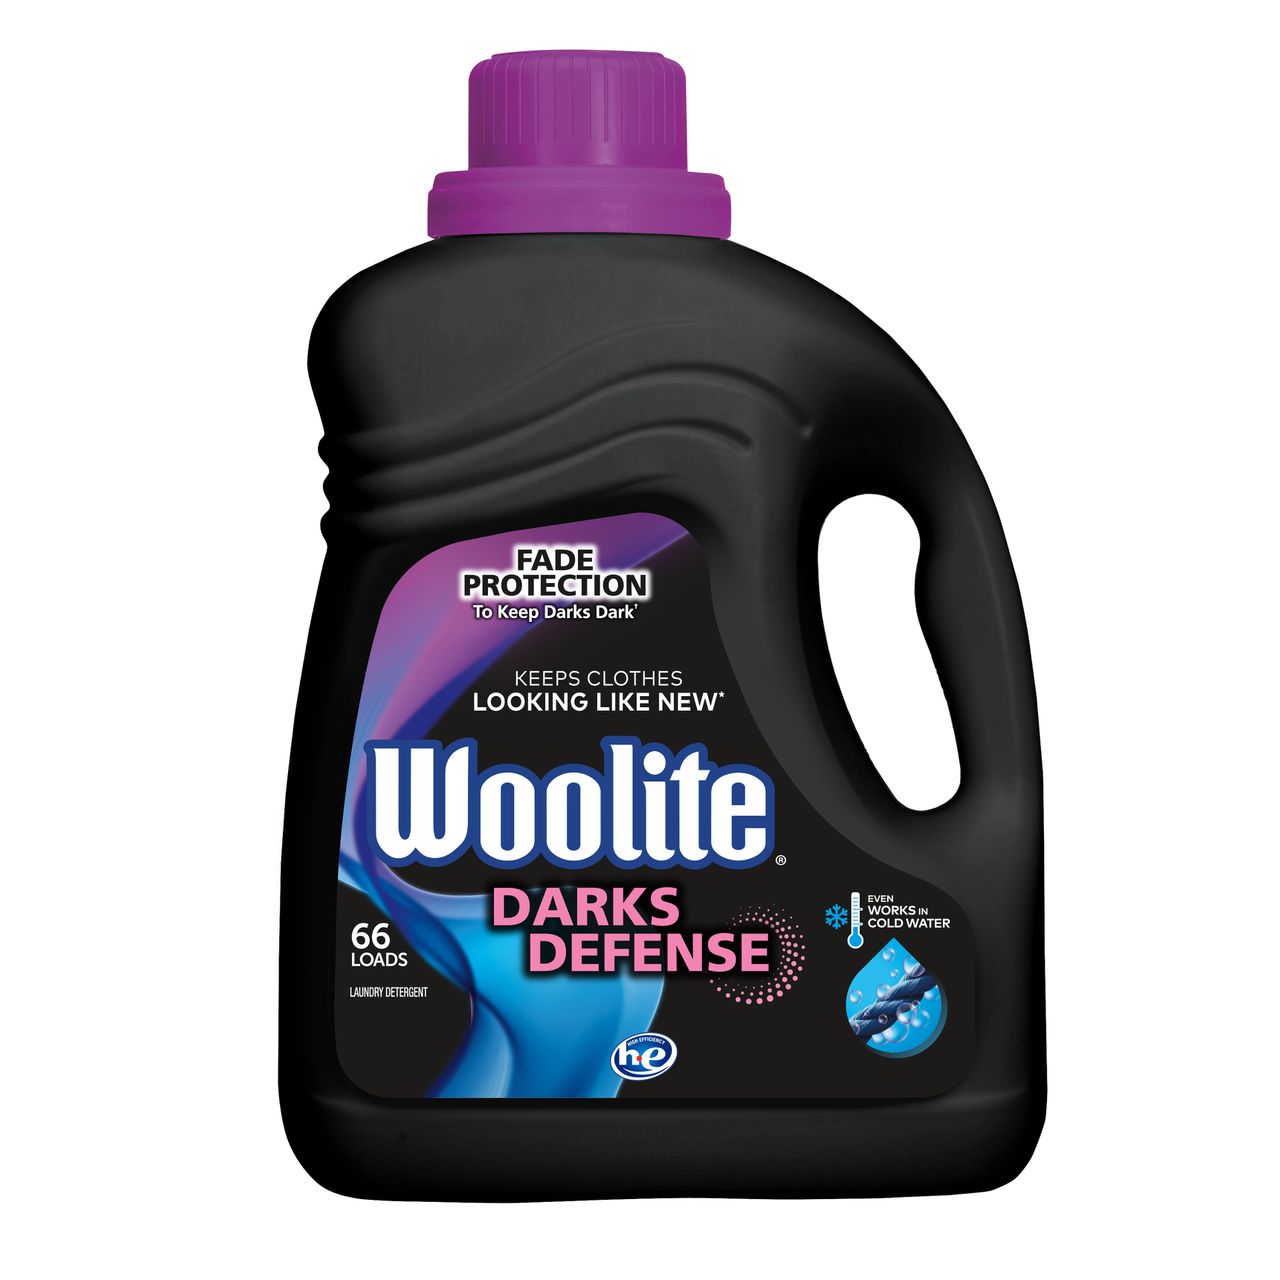 Woolite® Darks Defense  Dark Care Laundry Detergent